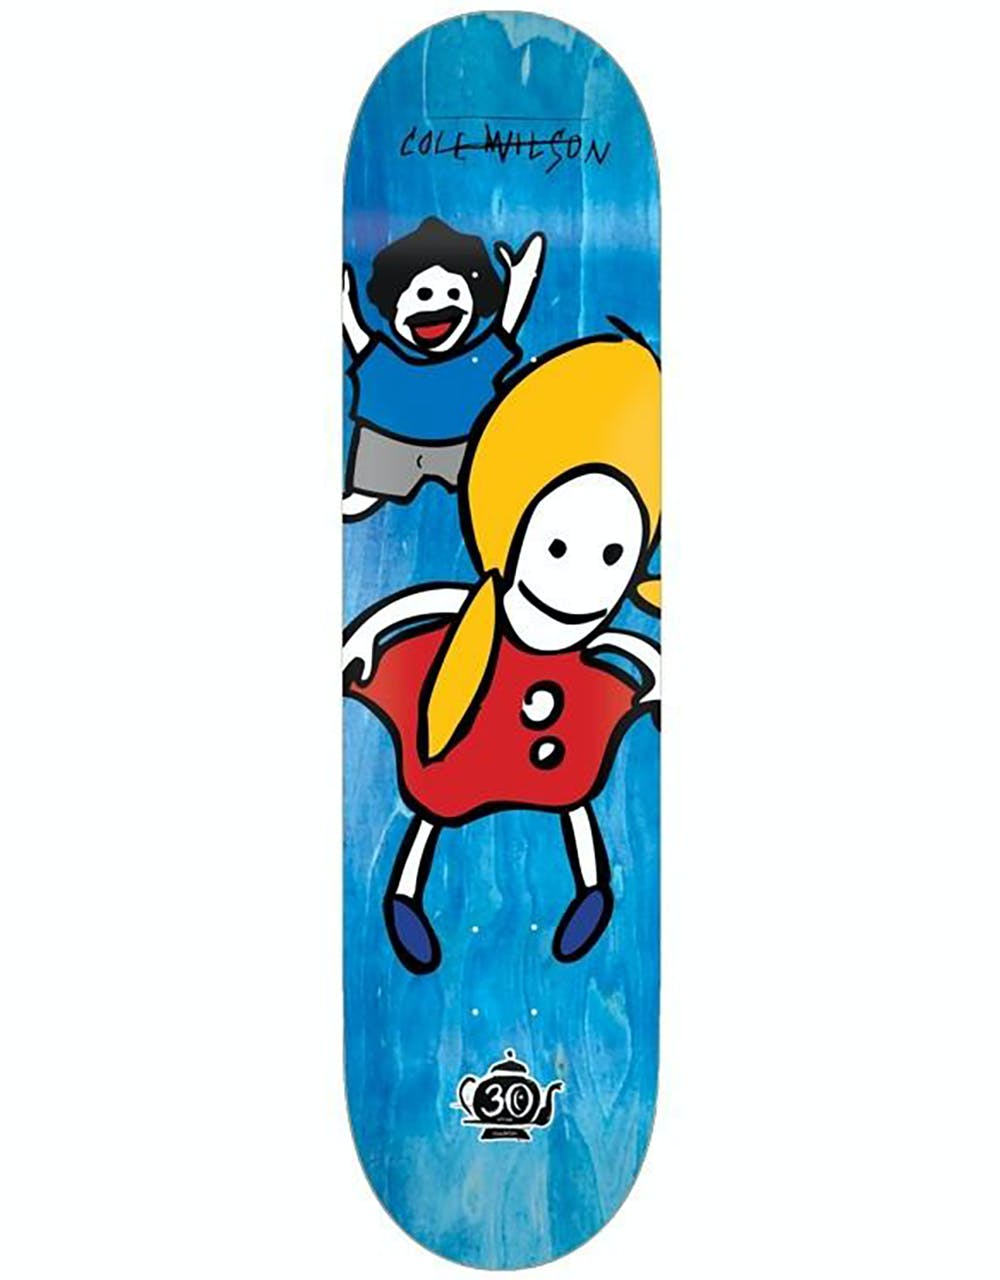 Foundation Wilson Peeky Peeky 30 Year Reissue Skateboard Deck - 8"